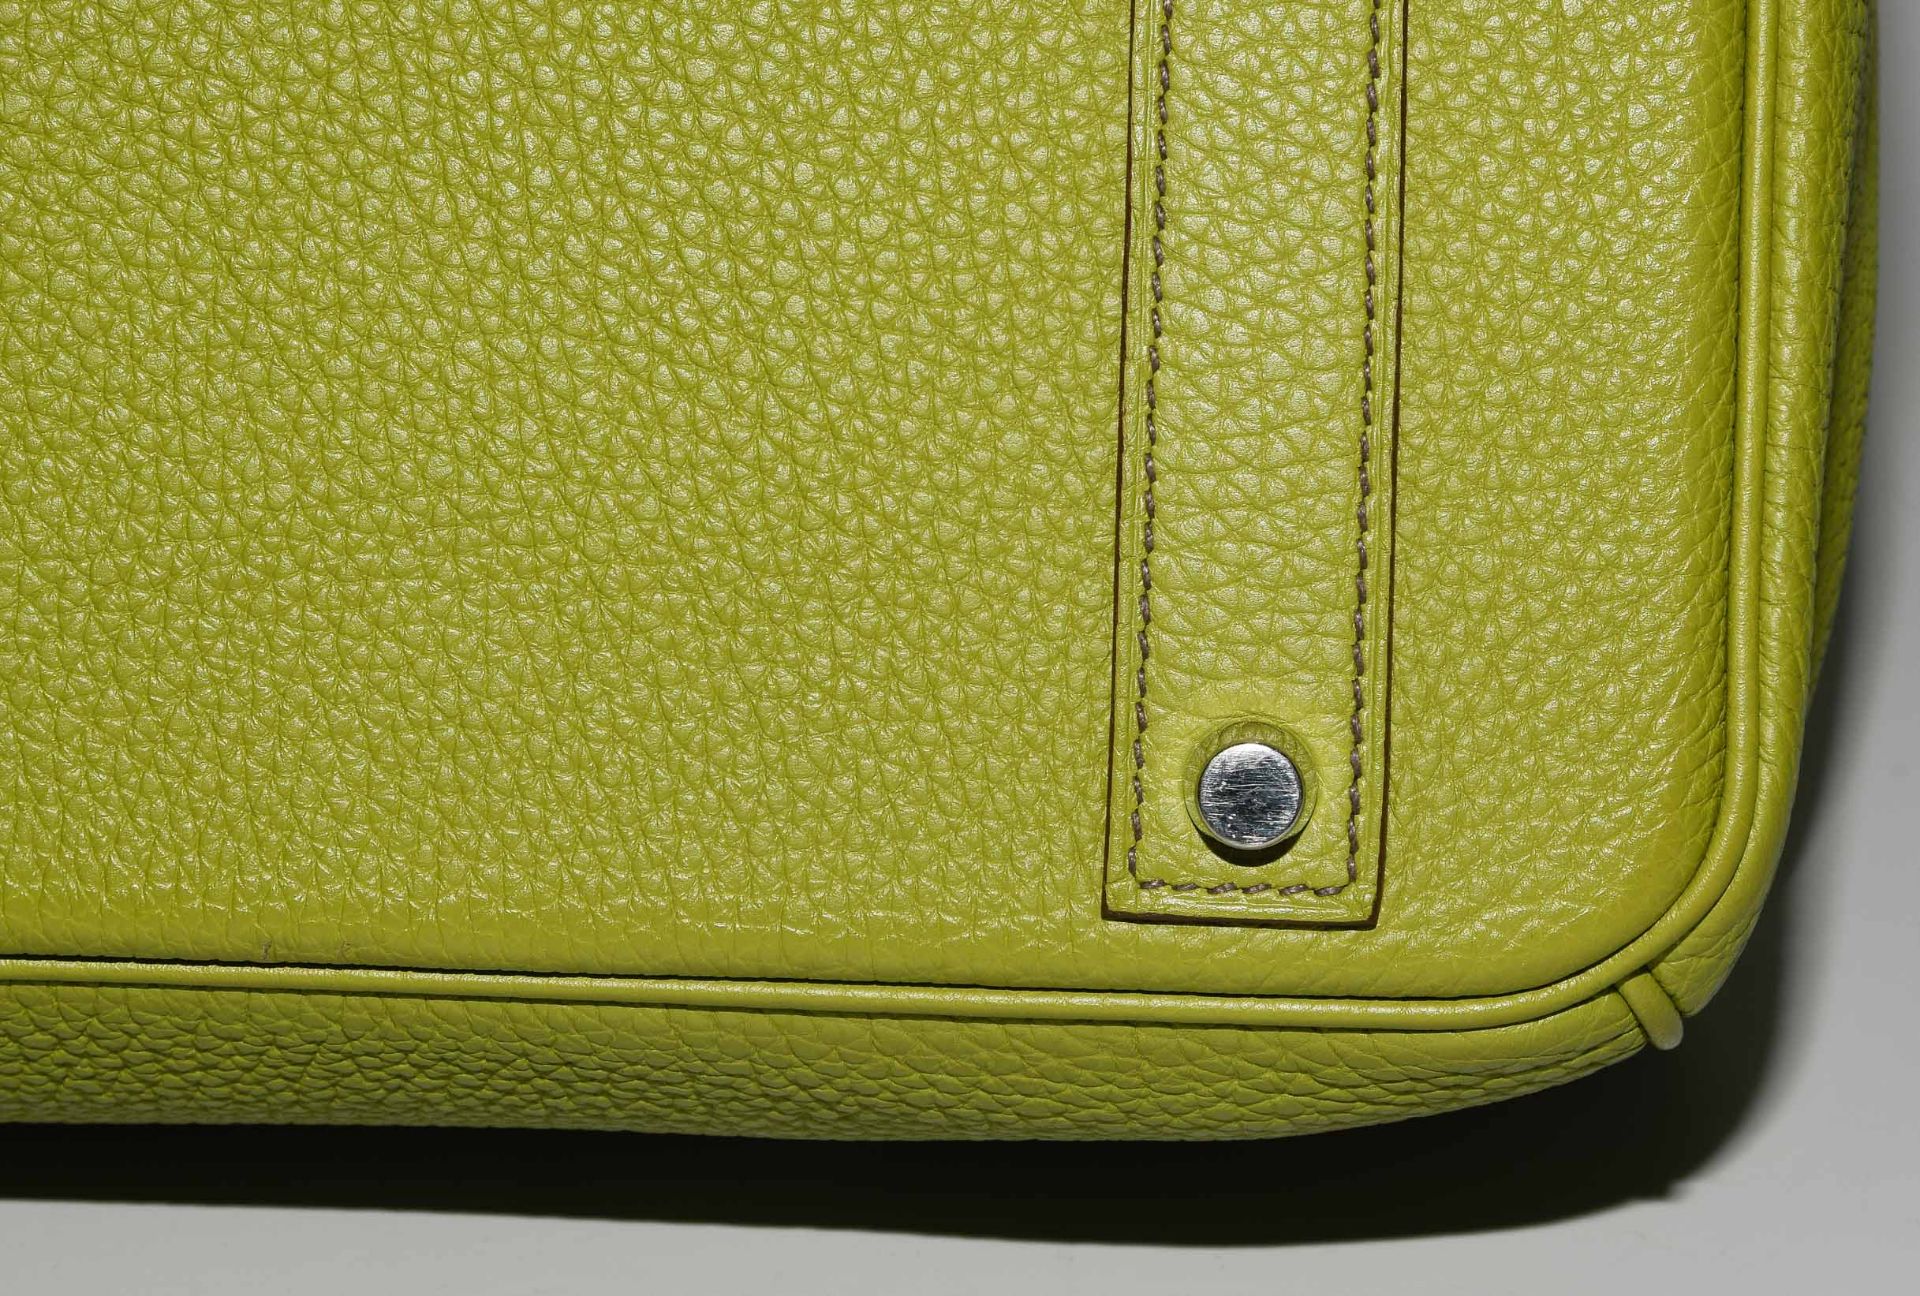 Hermès, Handtasche "Birkin" 40 cm - Image 10 of 21